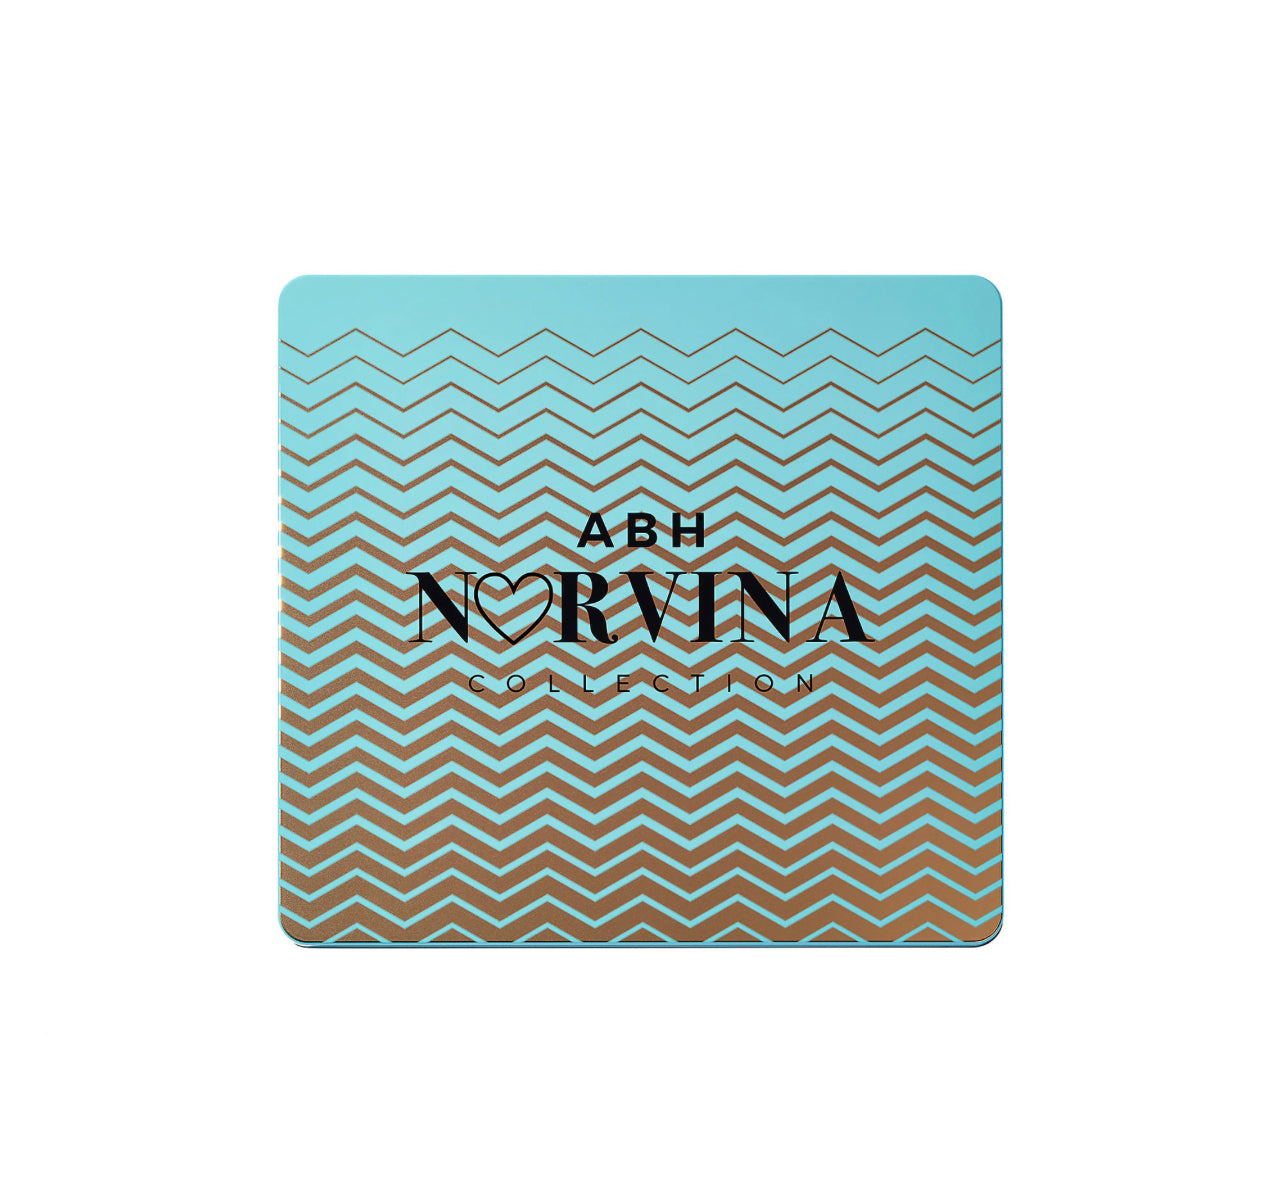 Norvina® Pro Pigment Palette Vol. 2 for Face & Body